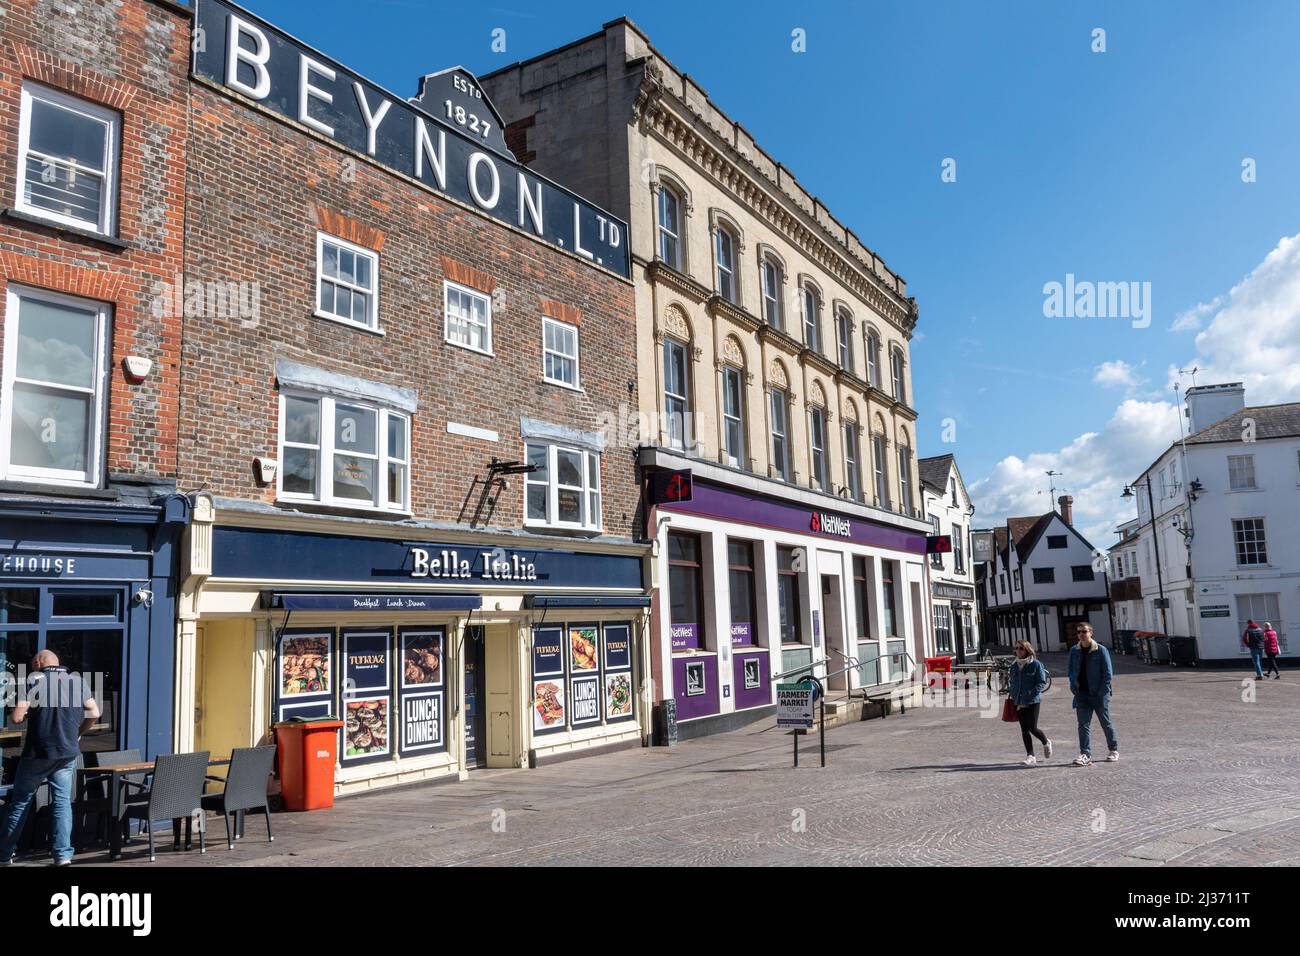 Edificio storico Beynon Ltd a Newbury Market Place, Berkshire, Inghilterra, Regno Unito, ex negozio di tappeti fondato nel 1827, ora un ristorante italiano. Foto Stock